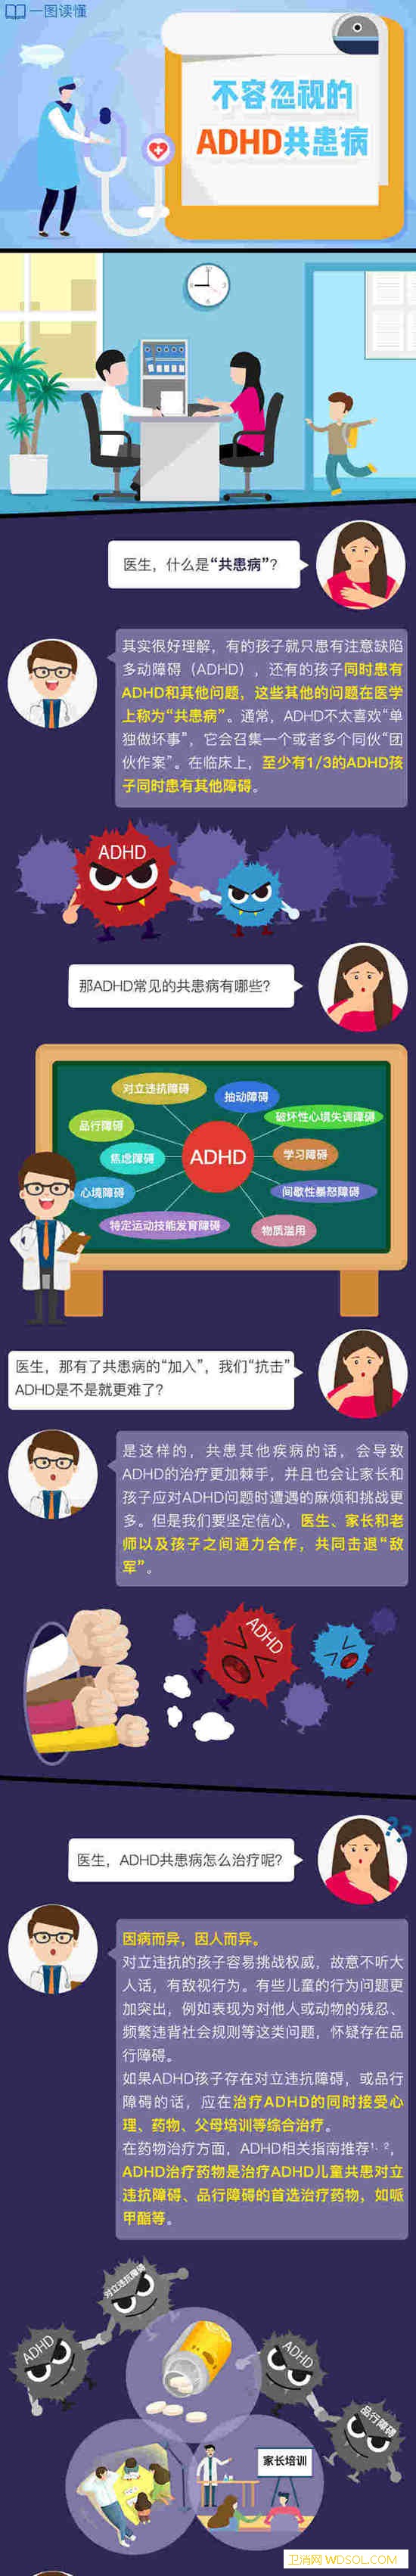 一图读懂丨不容忽视的ADHD共病_北京-基金会-责编-奖励